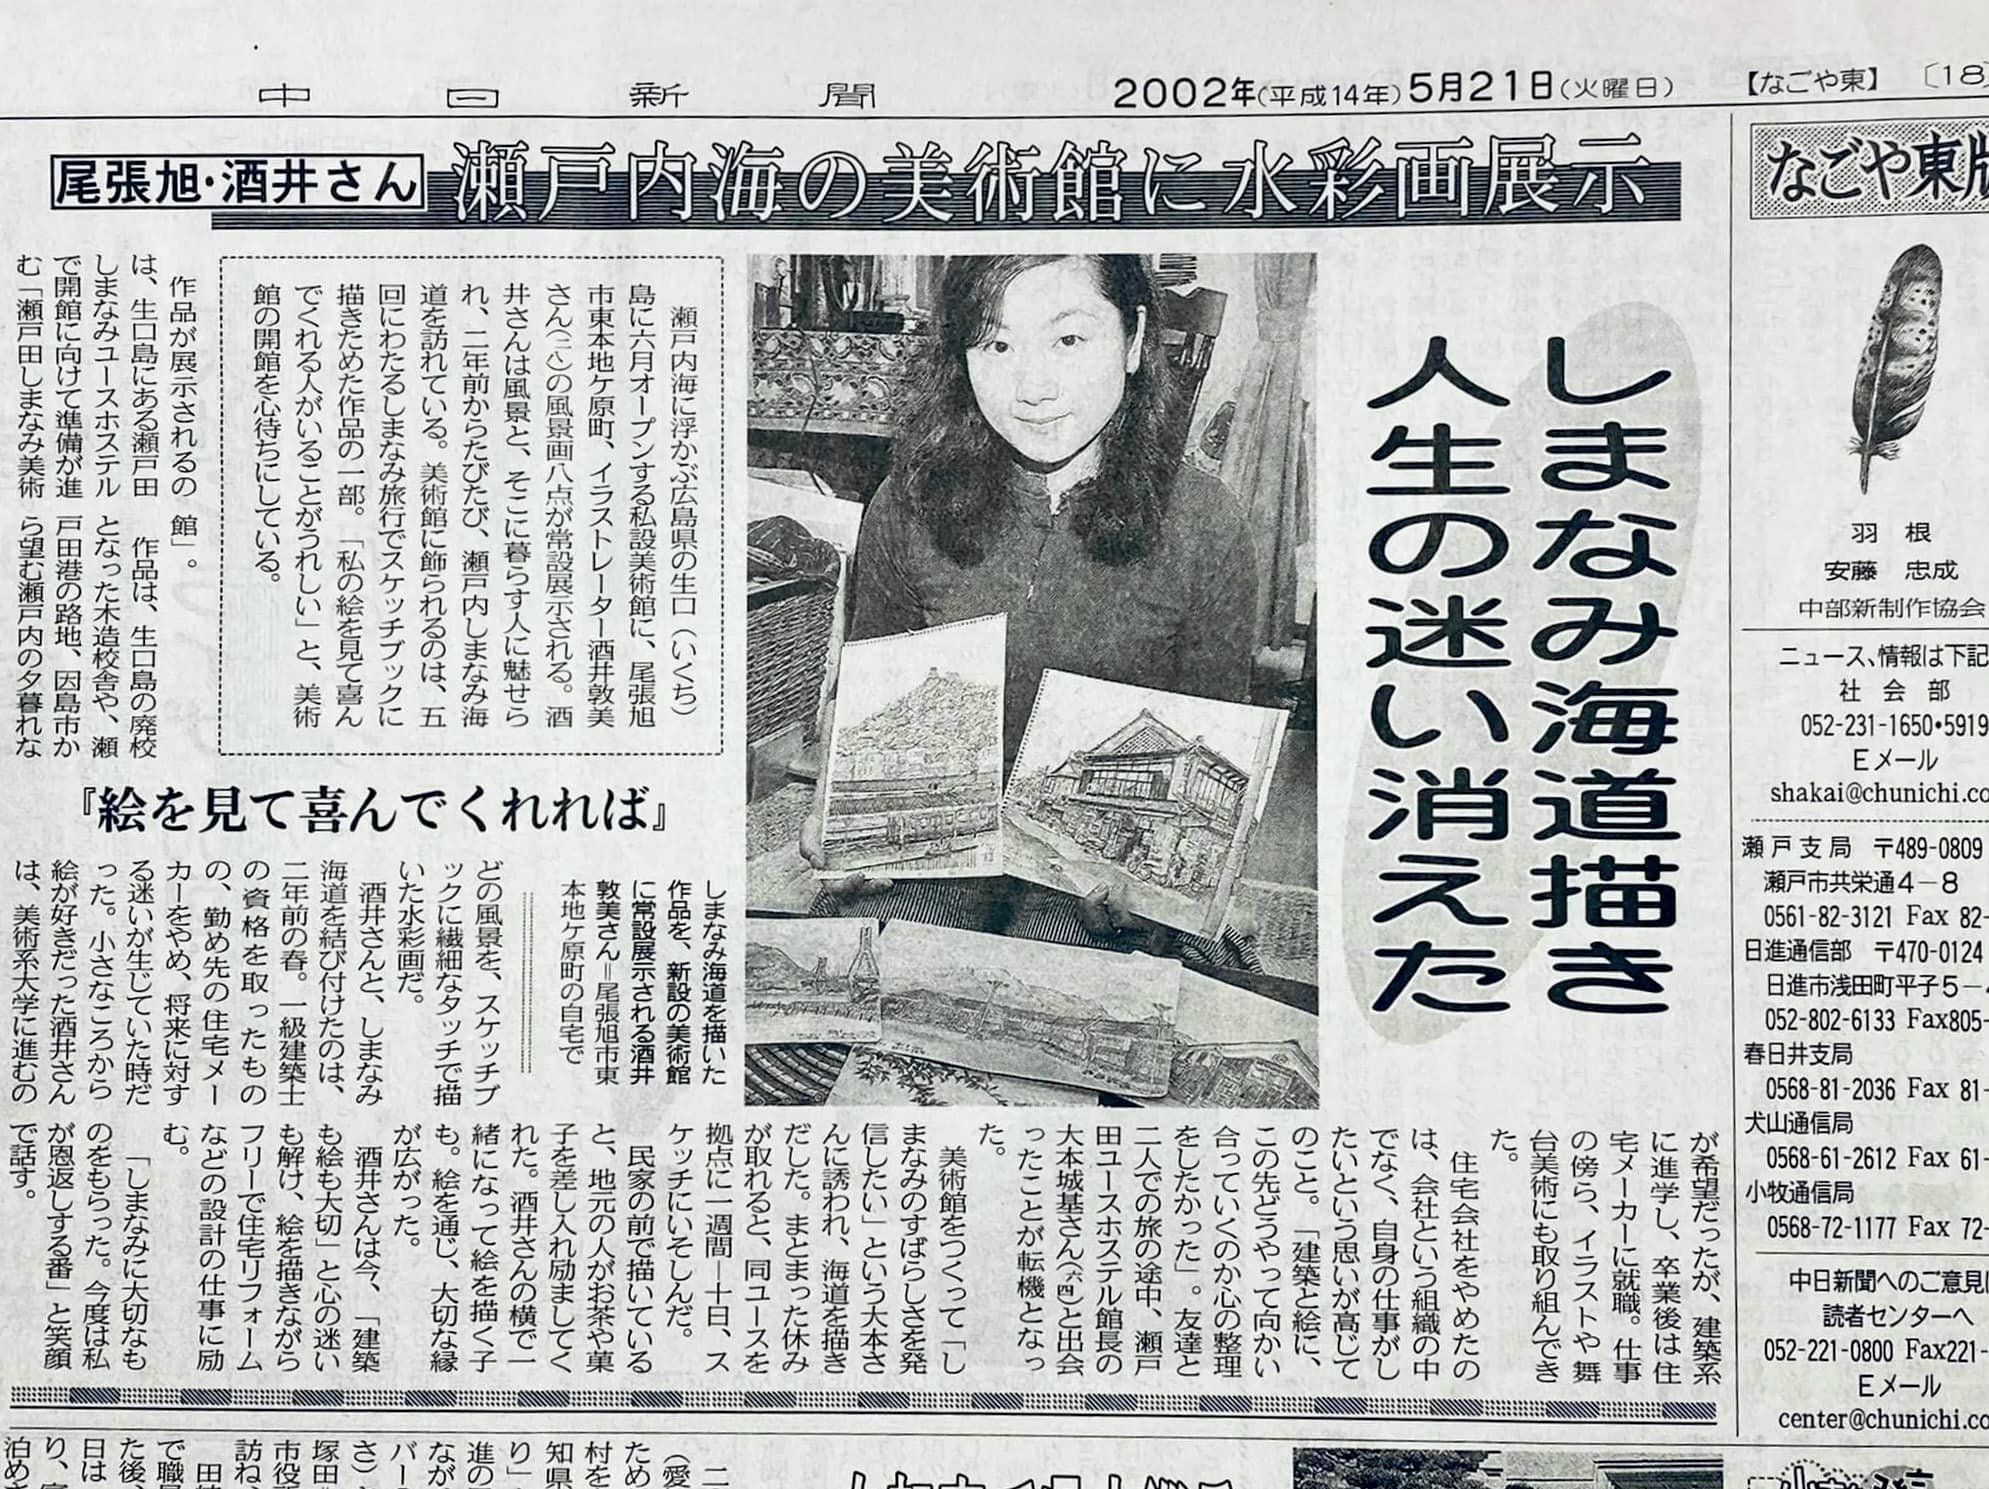 はじめて小島哲男さんに取材していただいた記事。 今回の記事も、この時の取材内容も盛り込んで、記事にしてくださいました。 ２２年のご縁に感謝が溢れます🌸